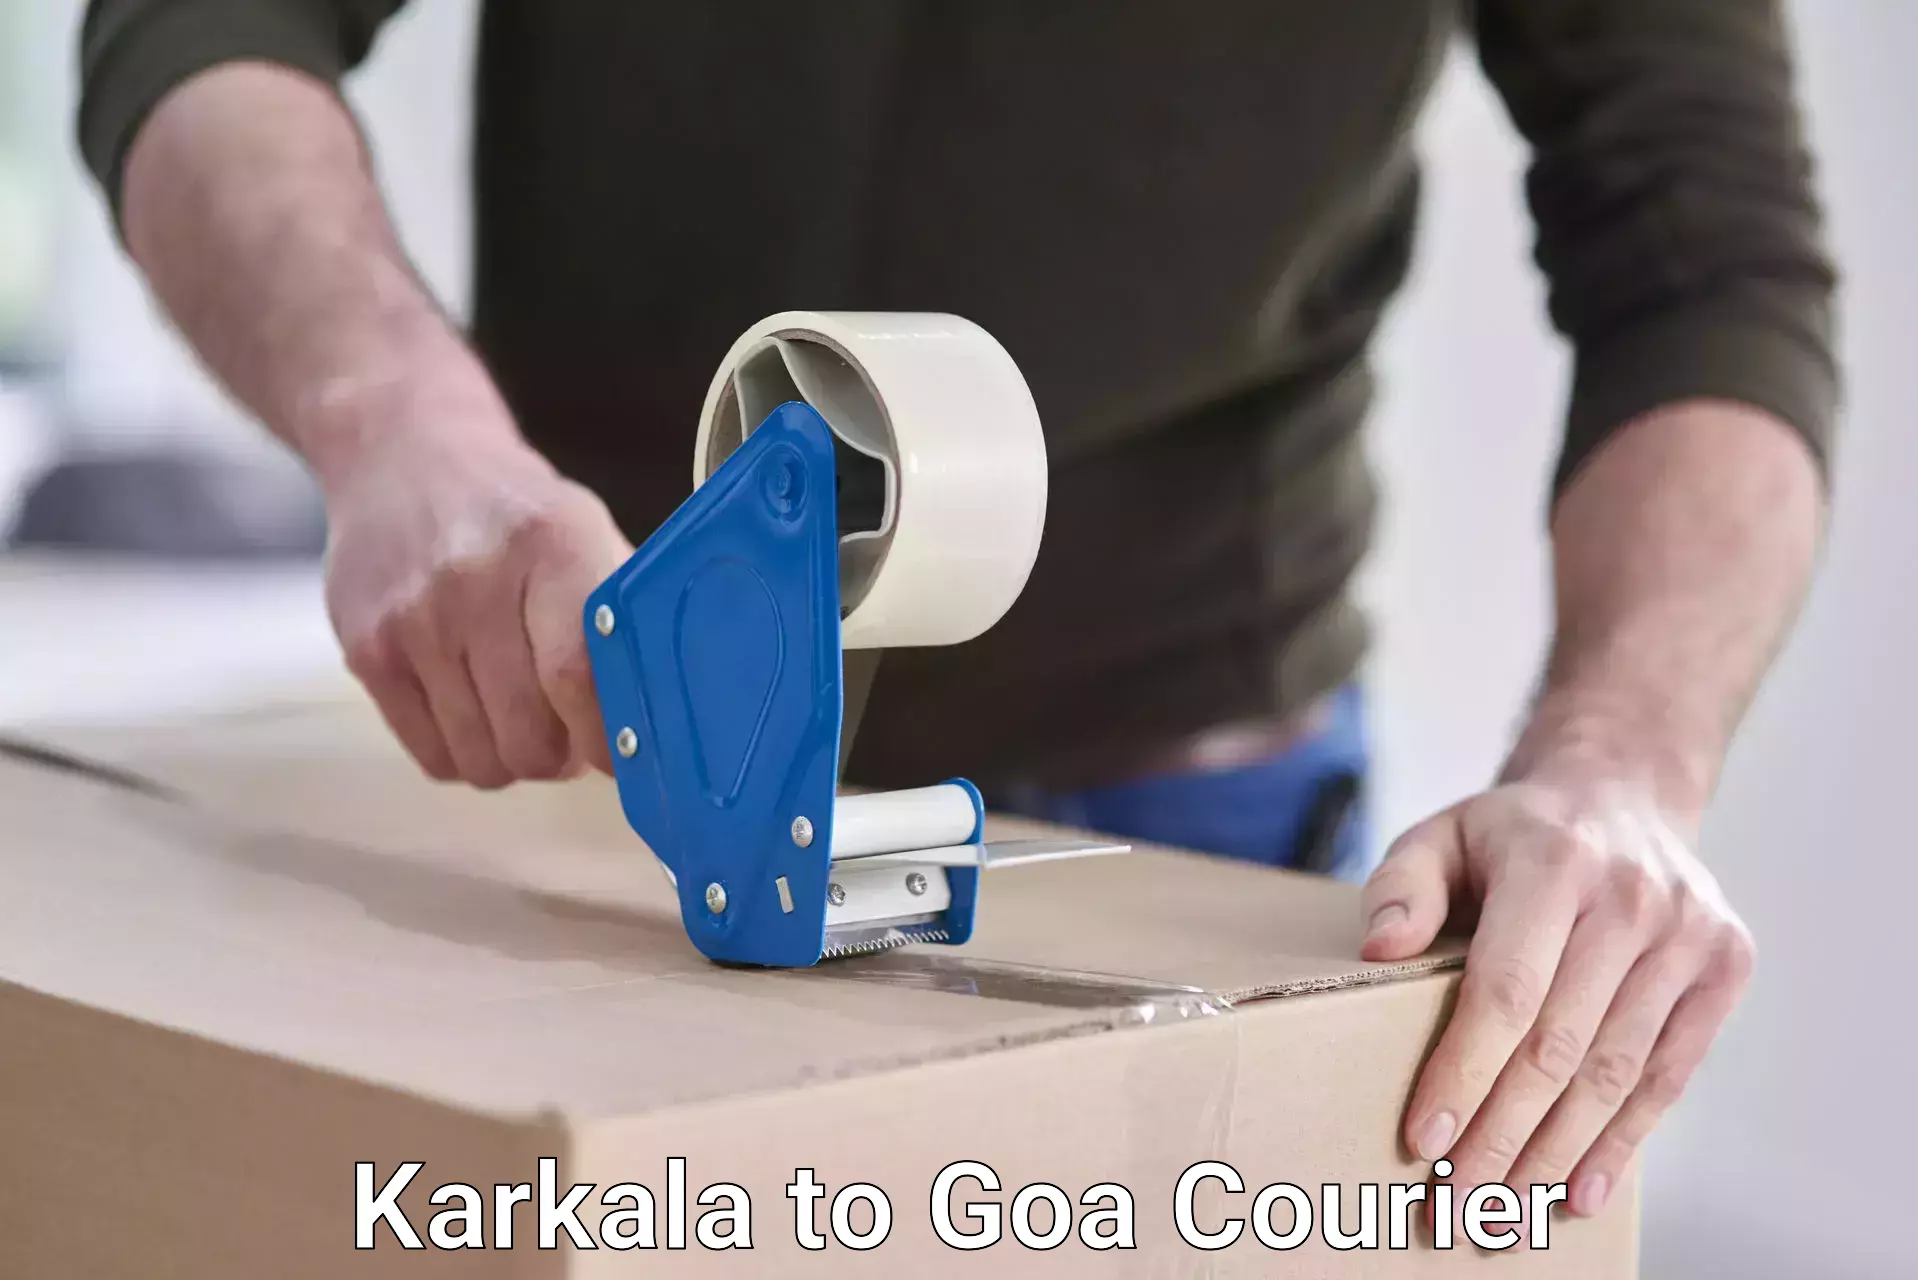 Courier insurance Karkala to Canacona